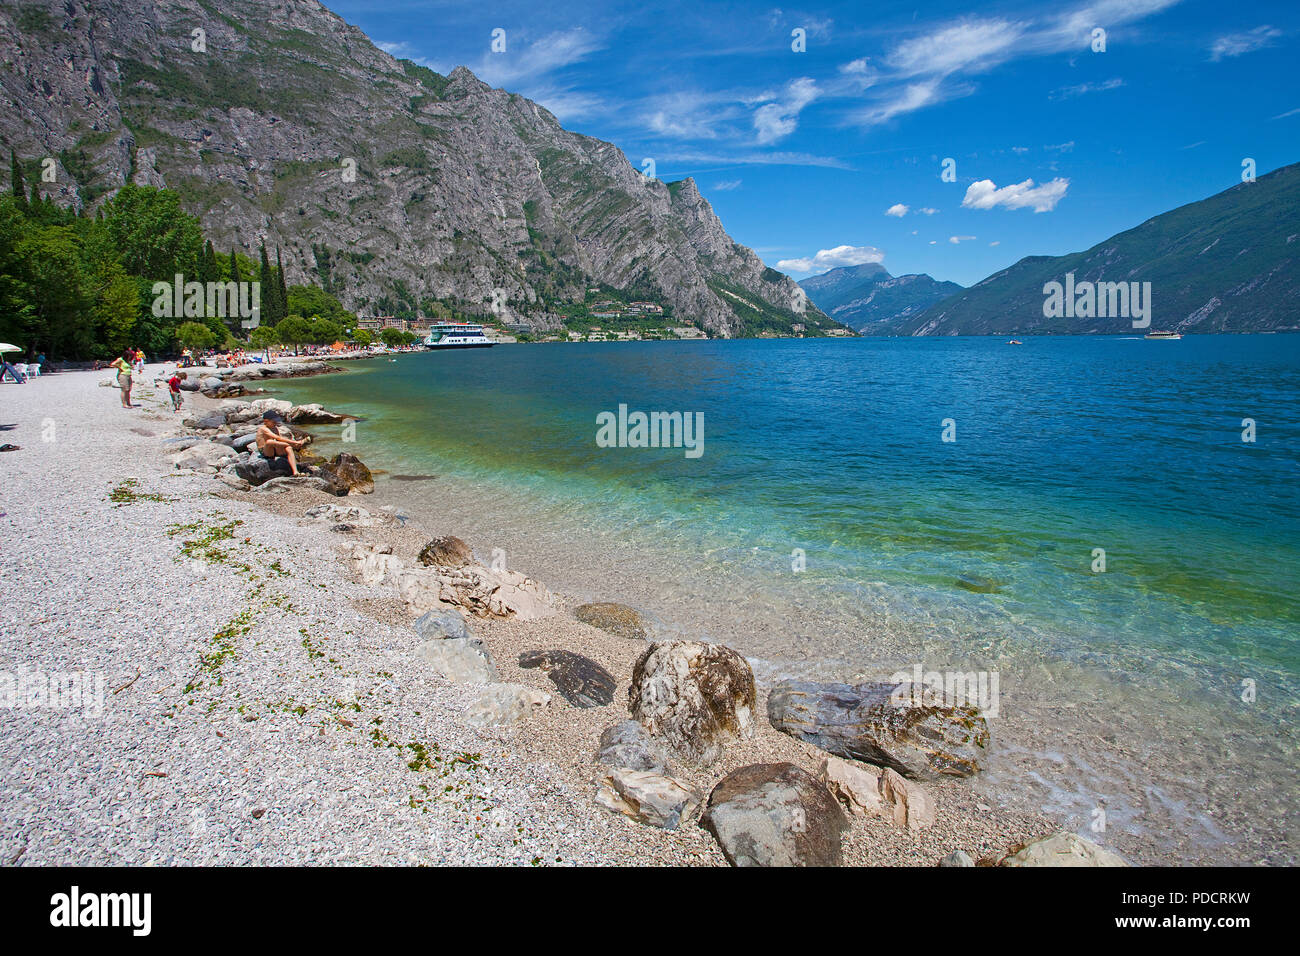 La gente sulla spiaggia di Limone, Limone sul Garda Lago di Garda, Lombardia, Italia Foto Stock